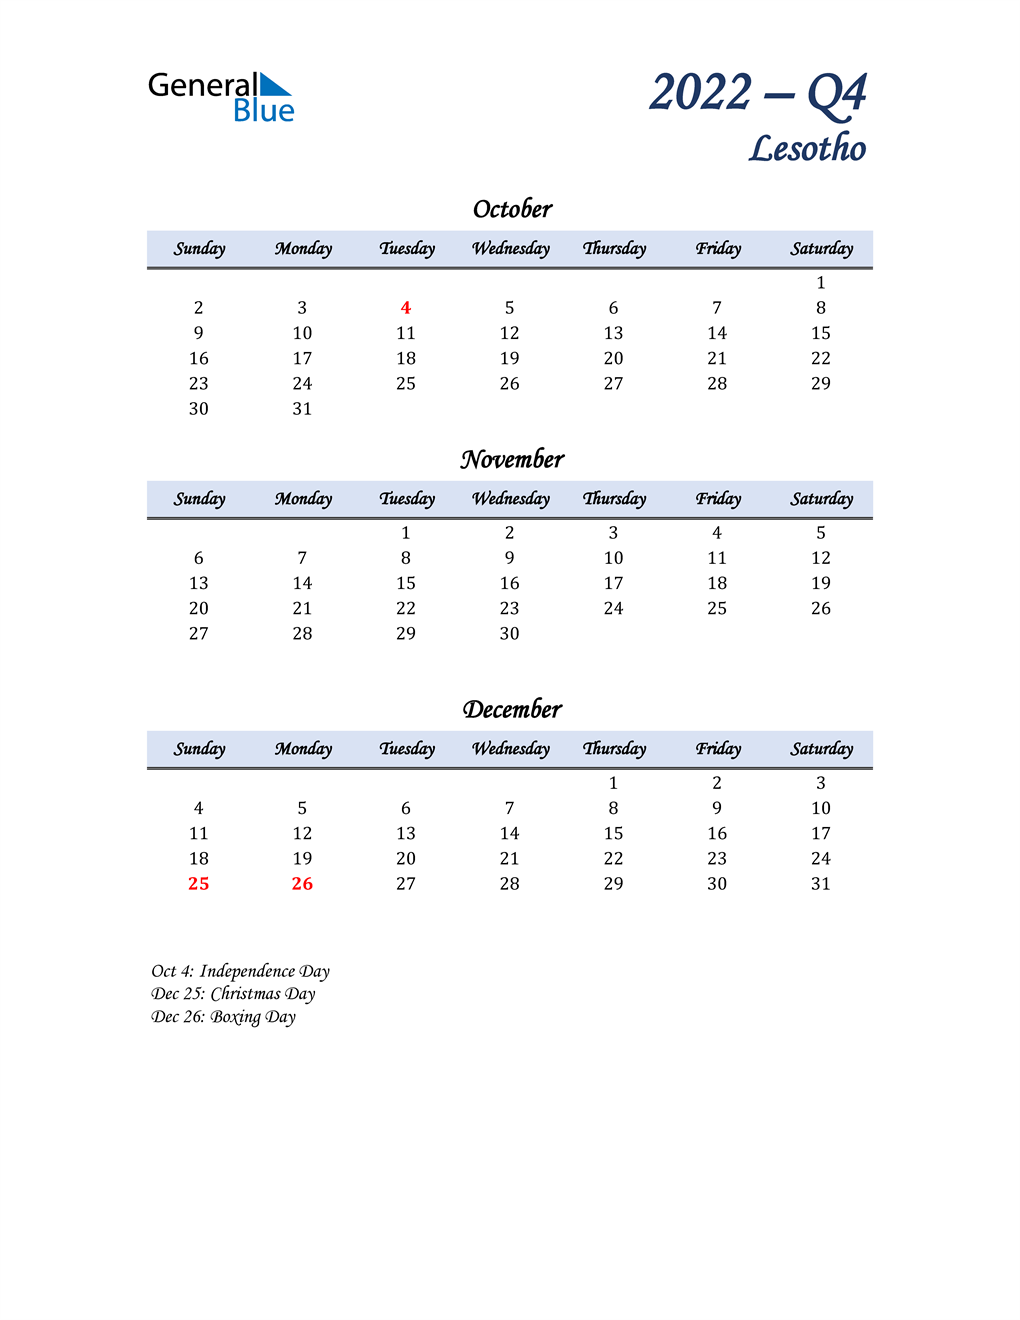  October, November, and December Calendar for Lesotho